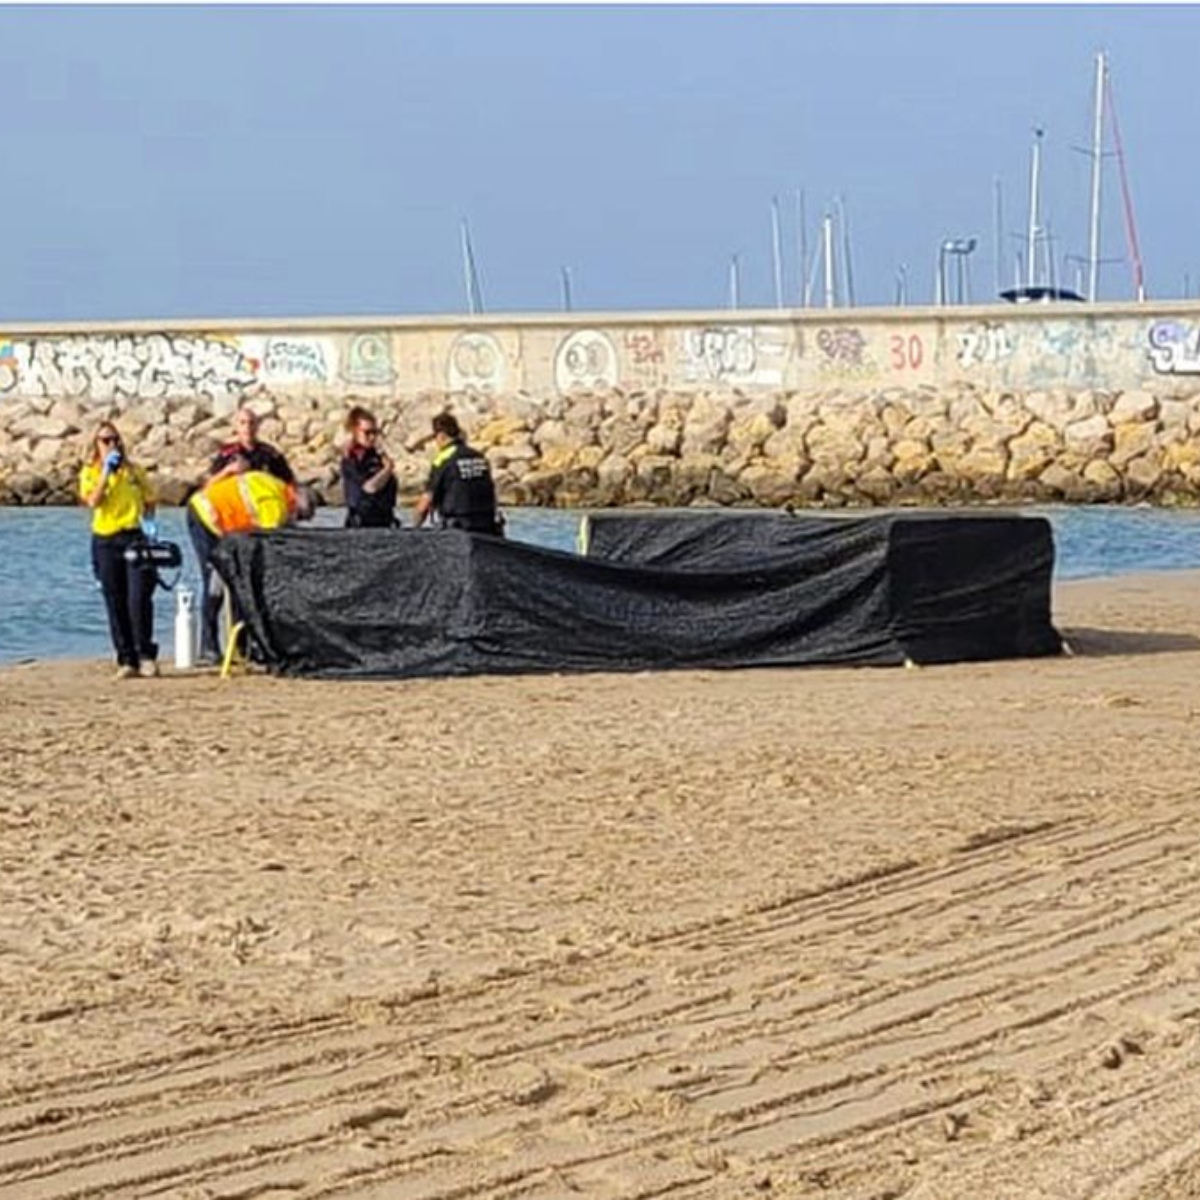  Cadáver de criança sem cabeça é encontrado em praia 